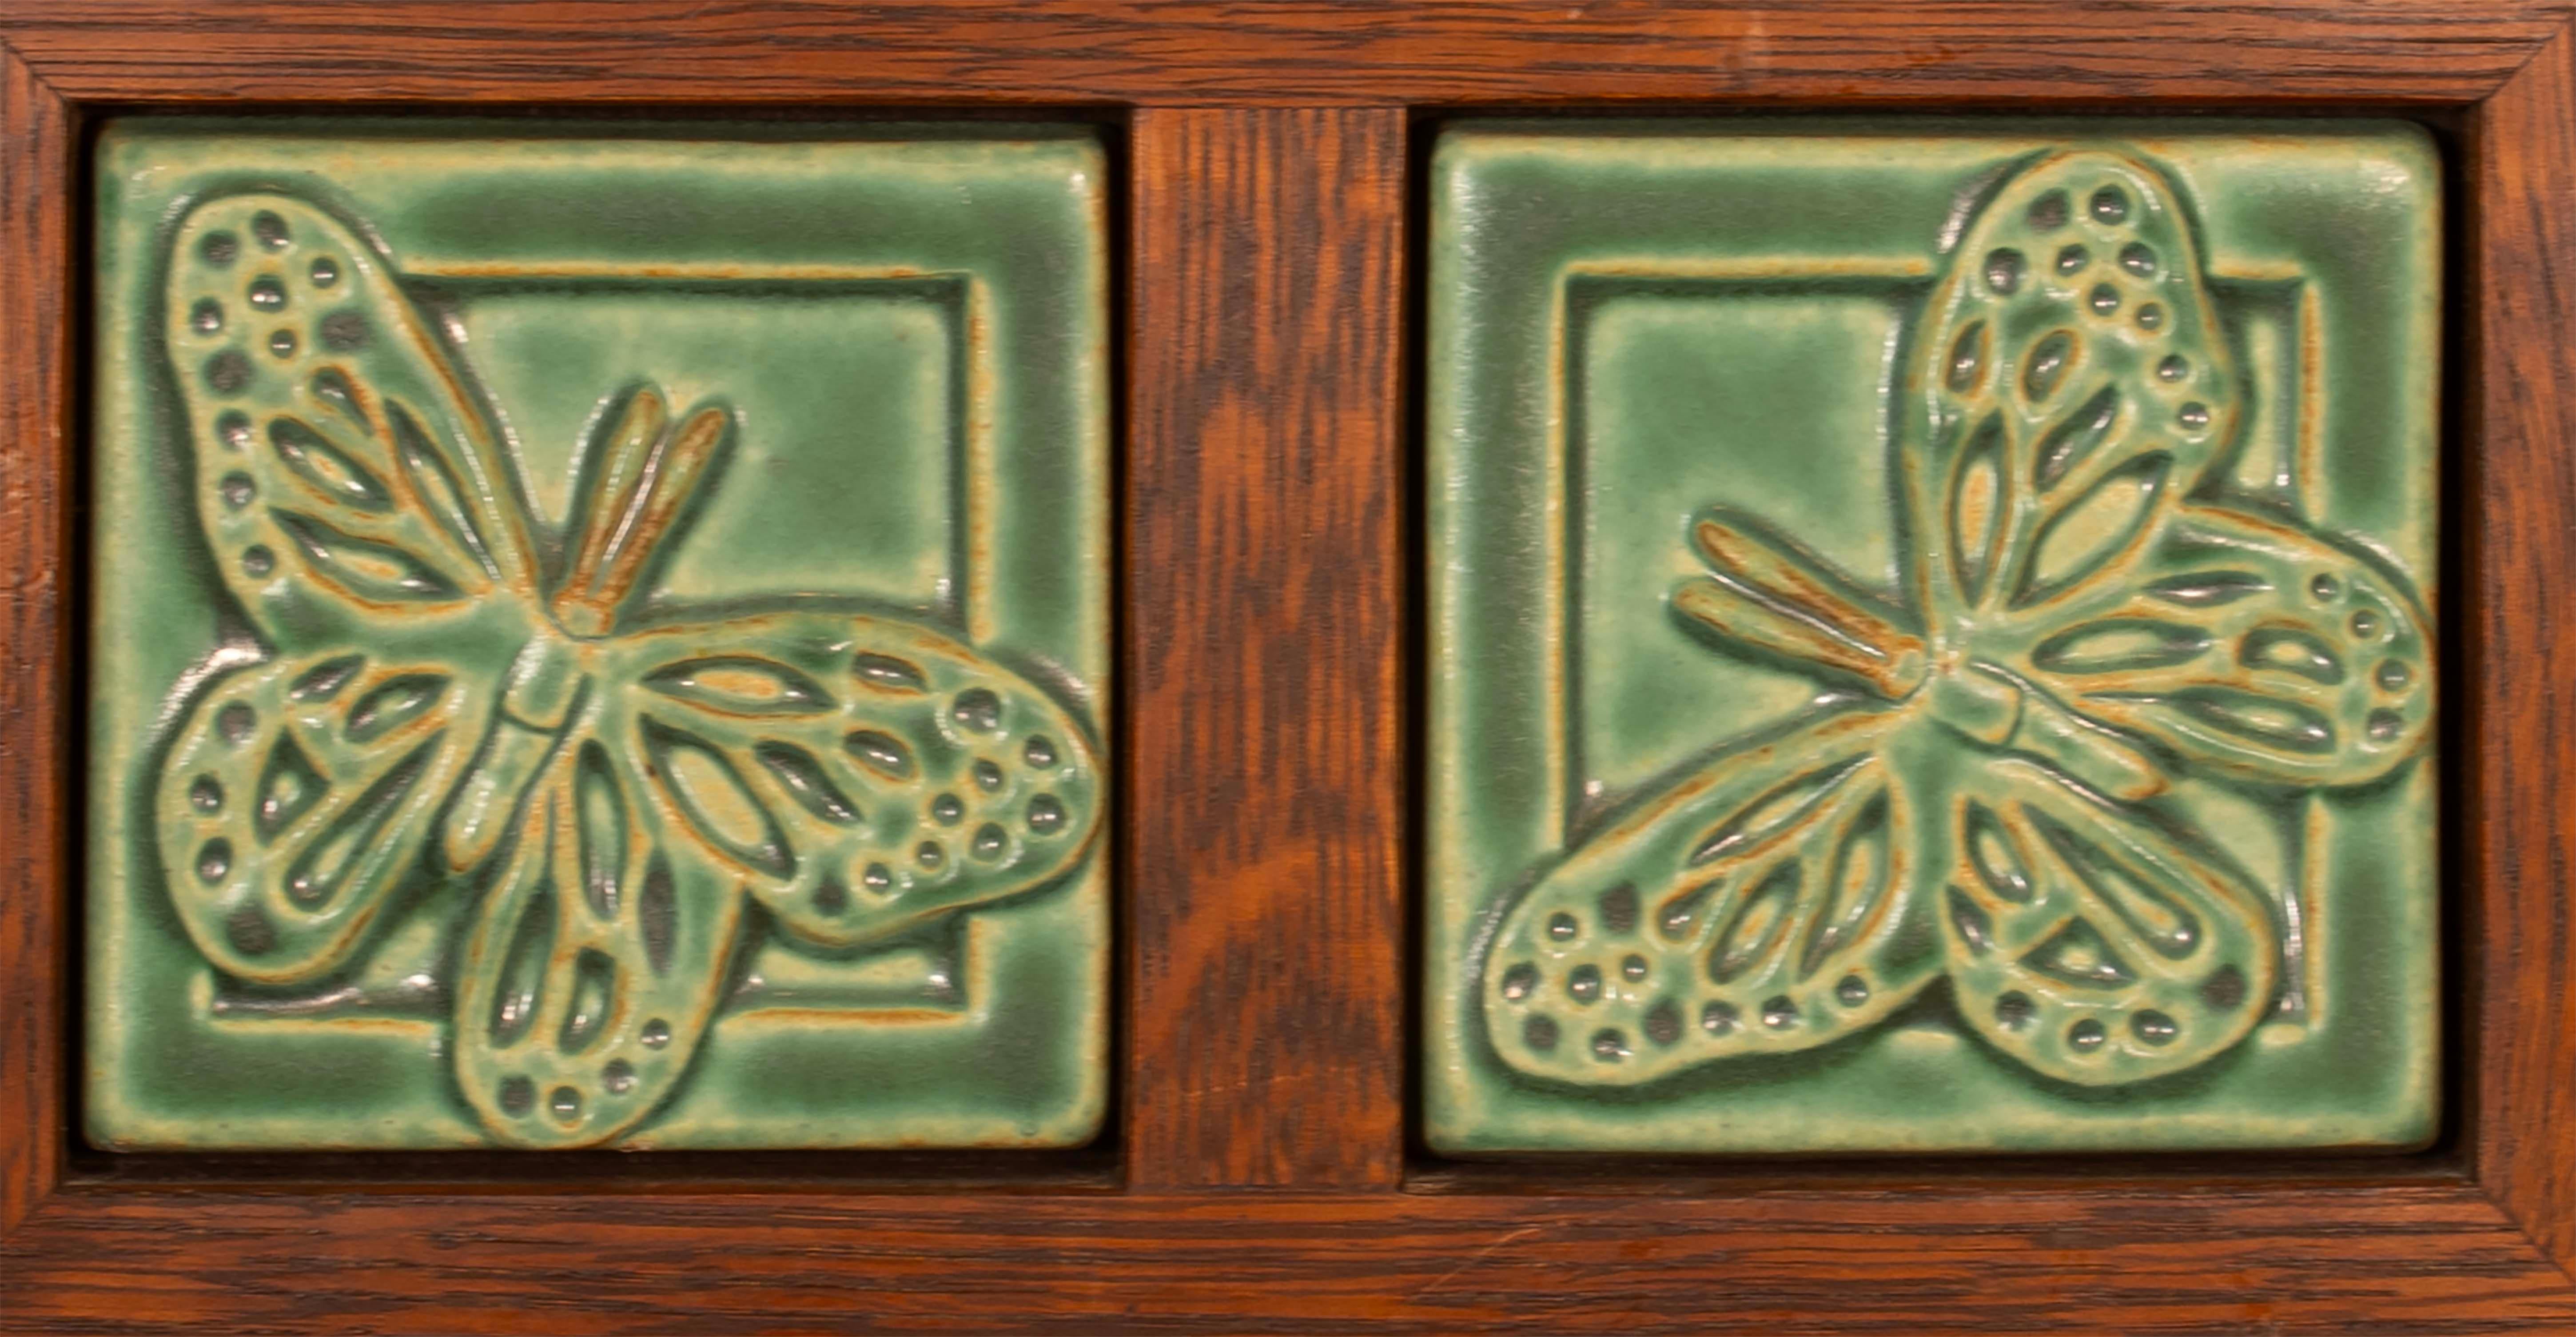 Ajoutez une touche de charme à votre maison avec ces carreaux de papillon Pewabic Detroit encadrés et magnifiquement travaillés. Les carreaux carrés présentent une couleur verte étonnante qui égayera n'importe quel espace. Une pièce simple mais